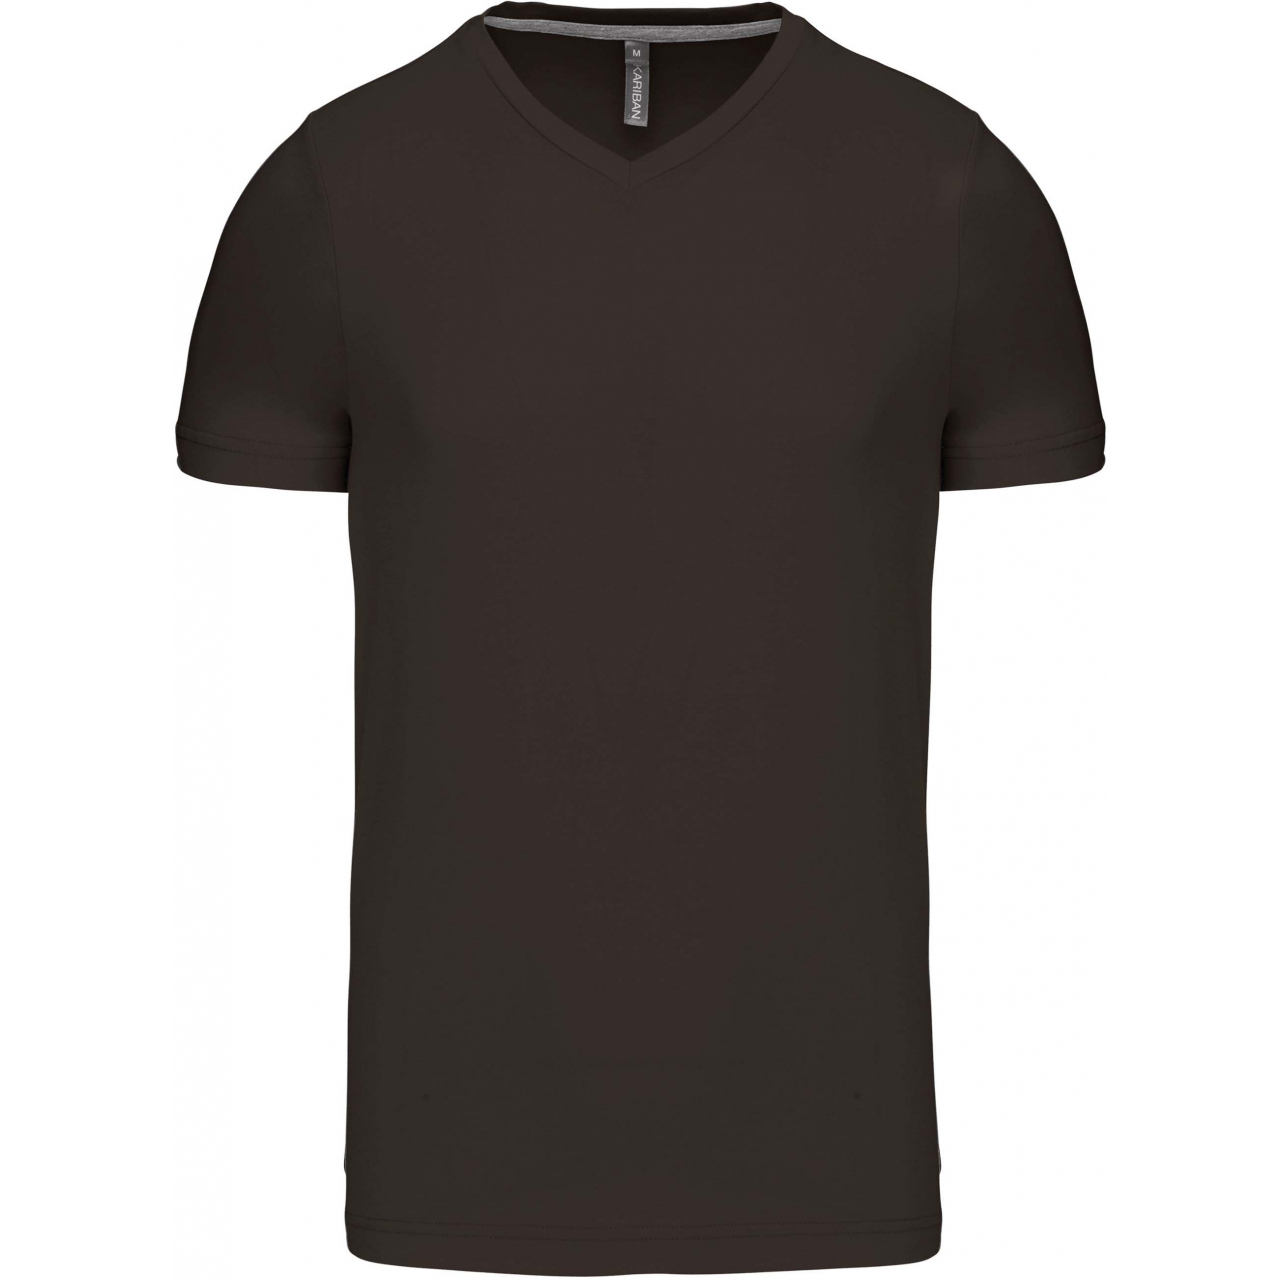 Pánské tričko Kariban krátký rukáv V-neck - tmavé khaki, 4XL